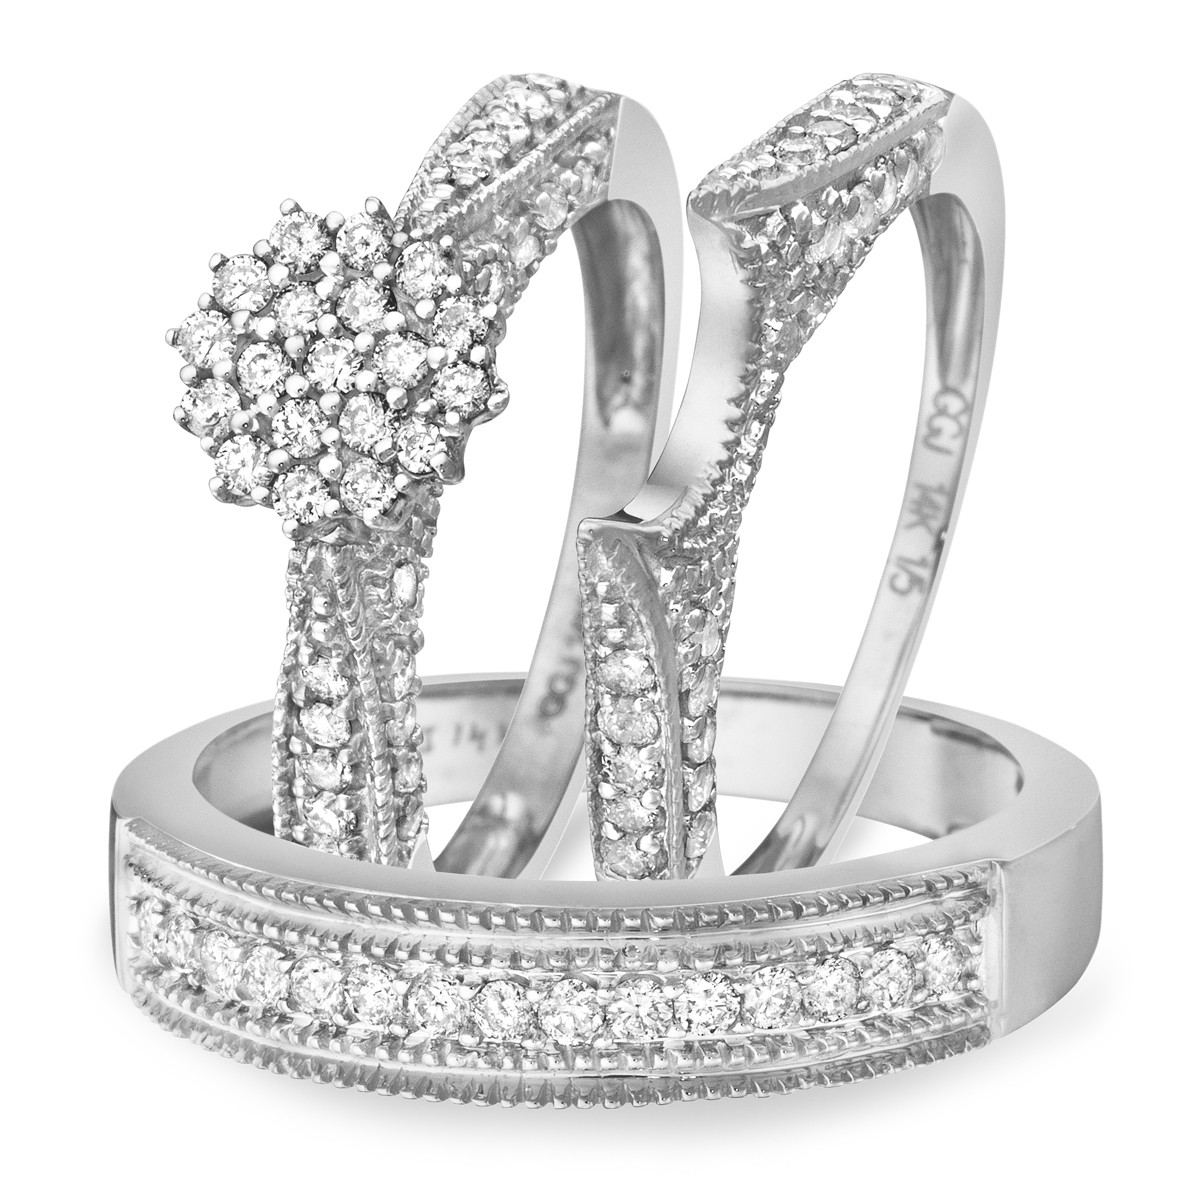 White Gold Wedding Ring Sets
 1 Carat Diamond Trio Wedding Ring Set 14K White Gold